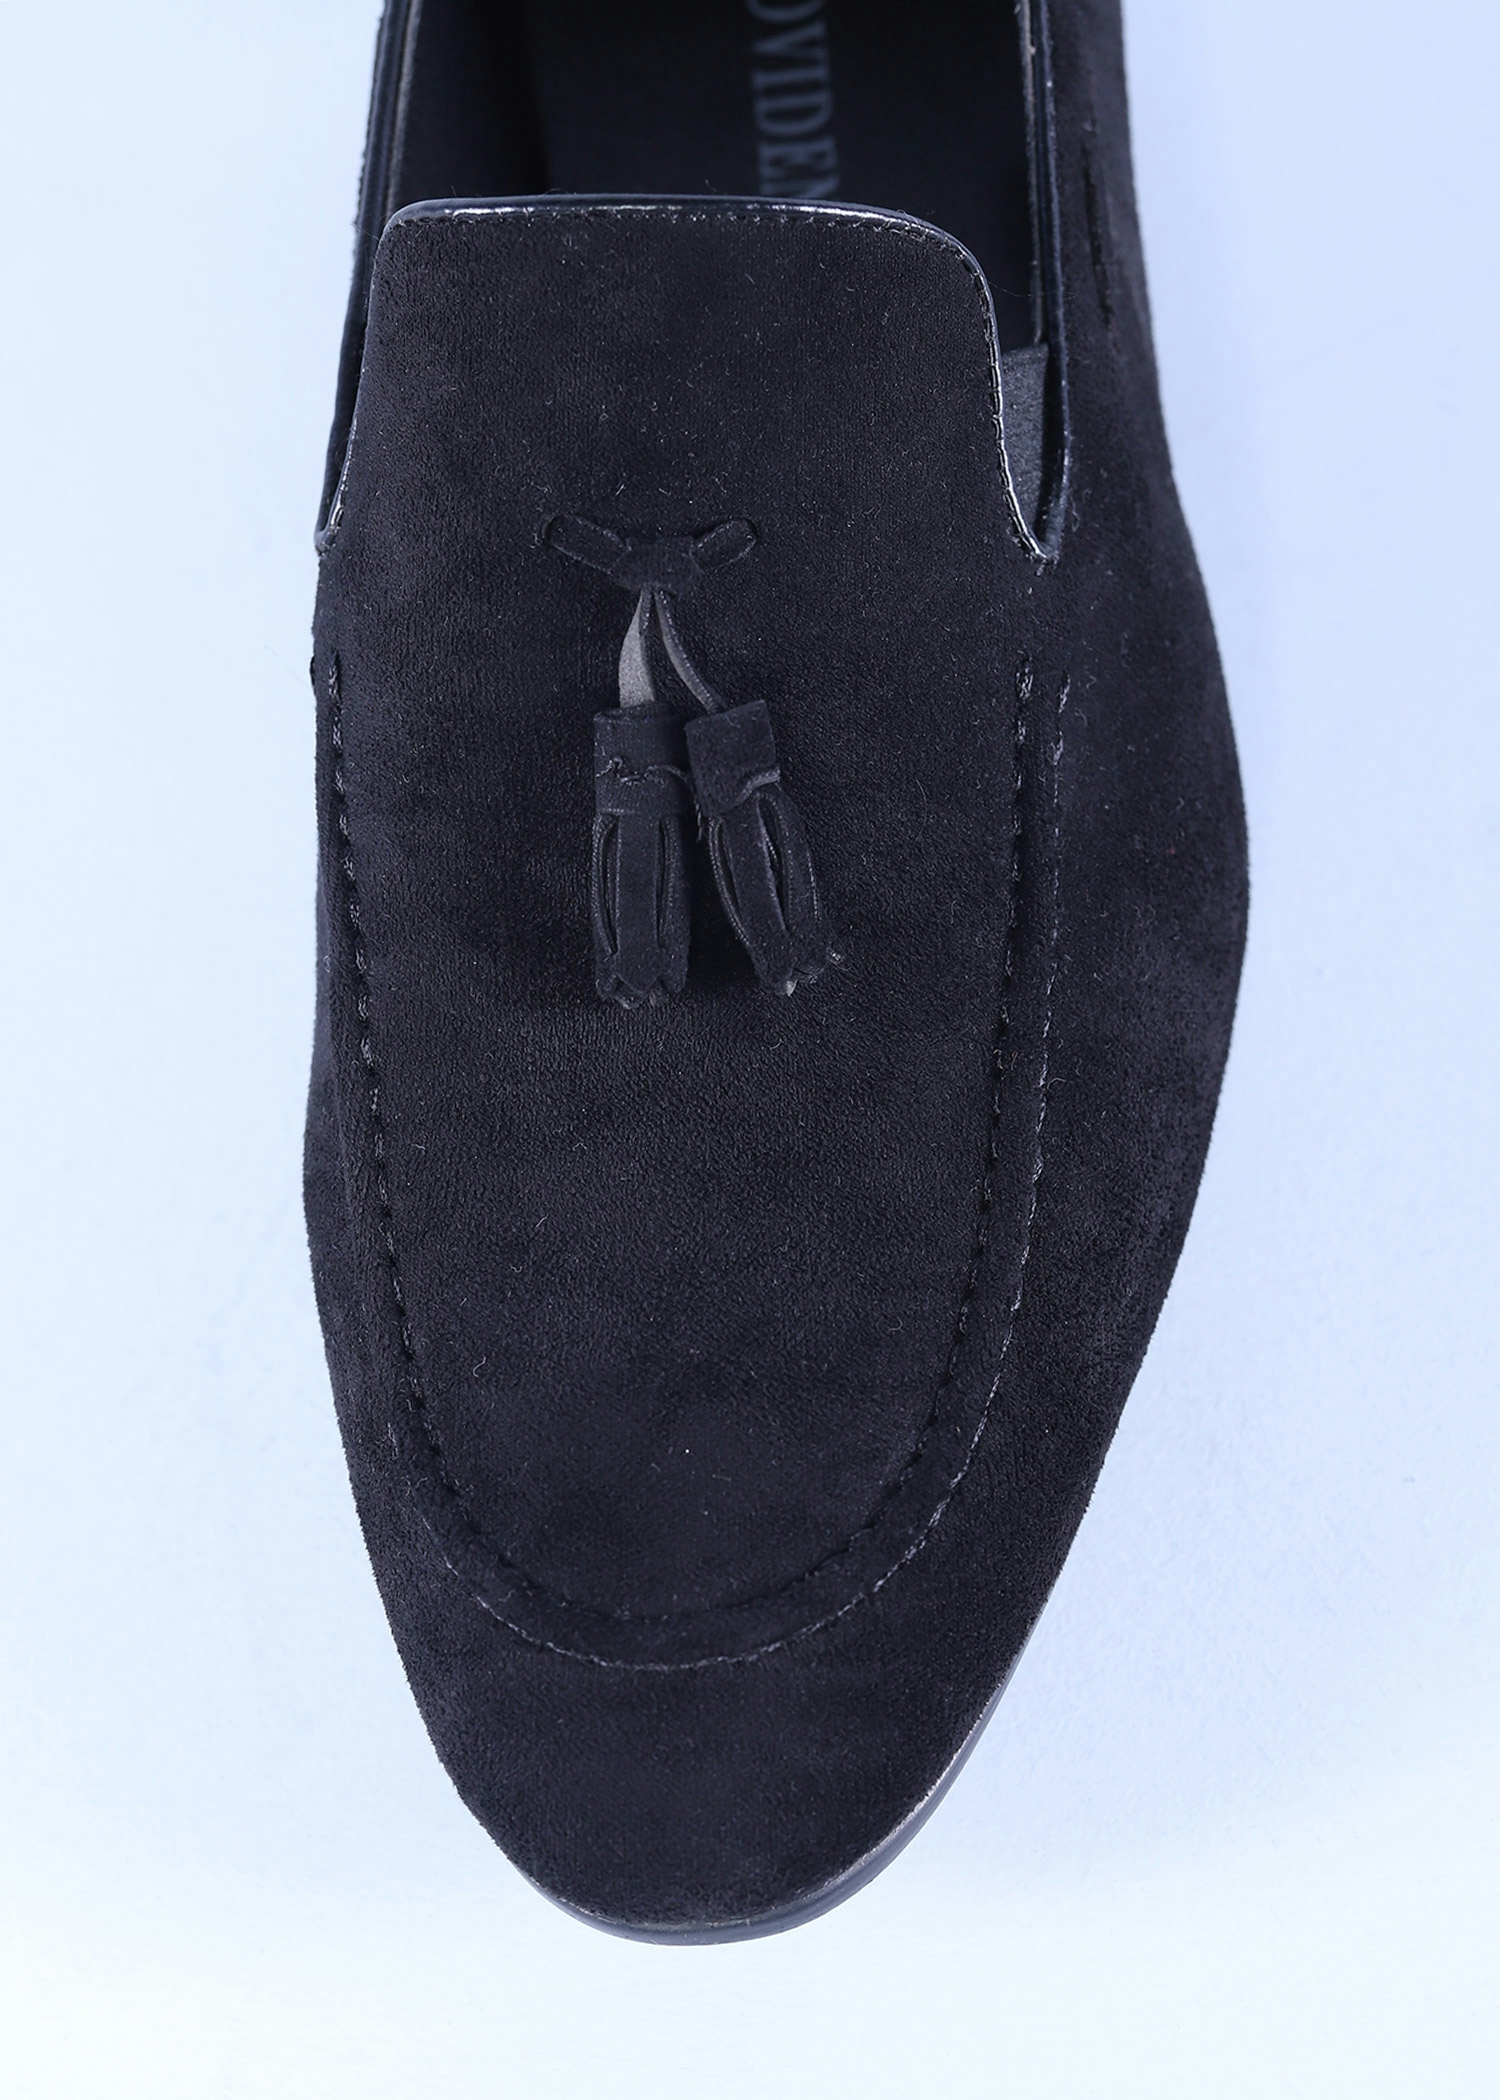 ebru mens shoes black color top close